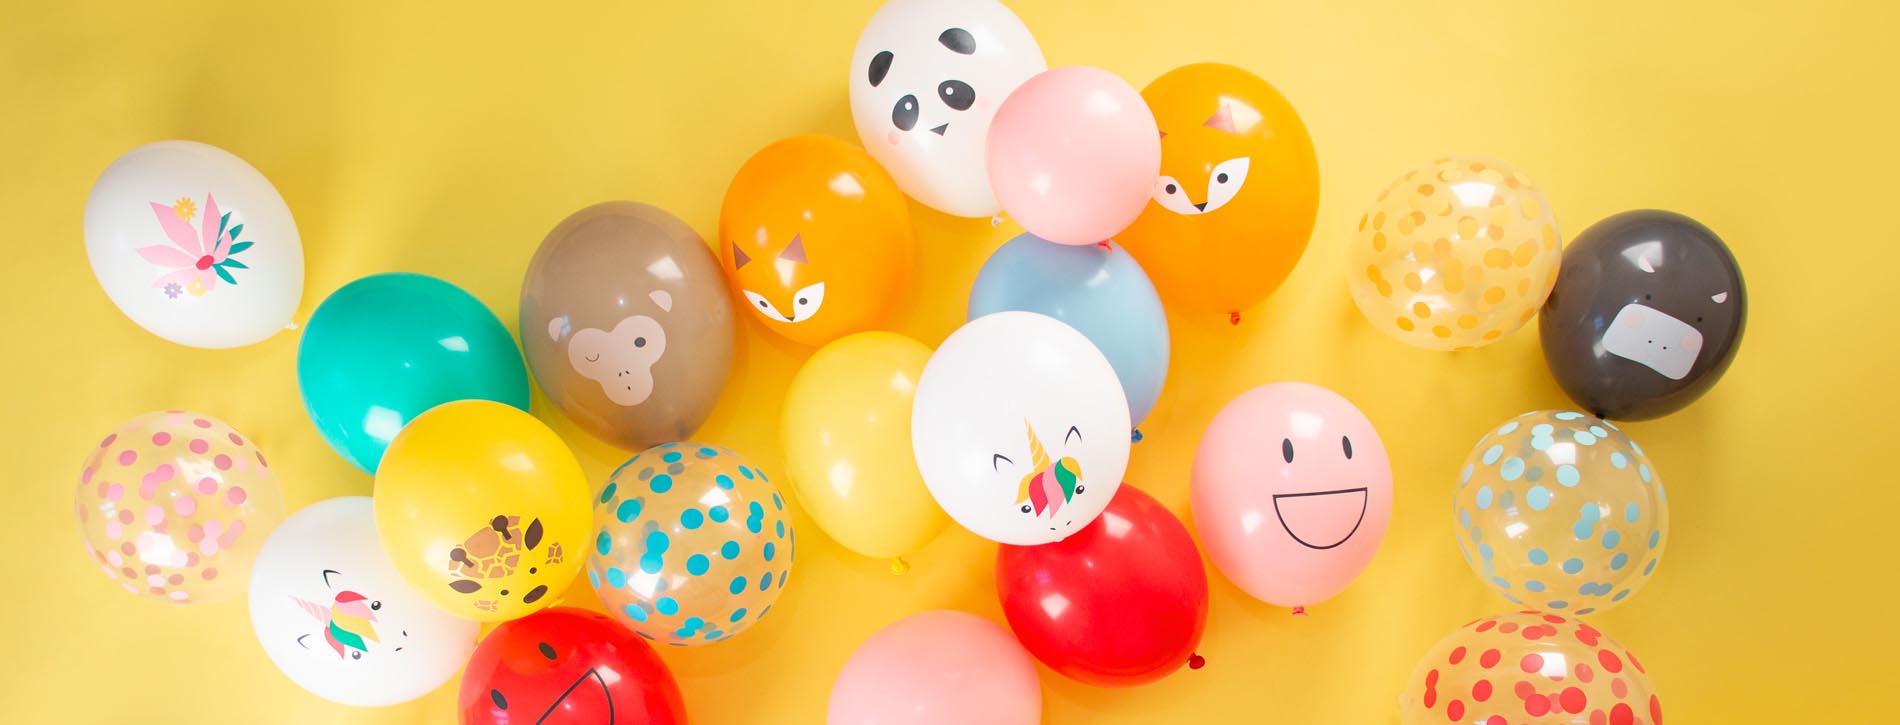 Ballons anniversaire 6 ans - Article de fête